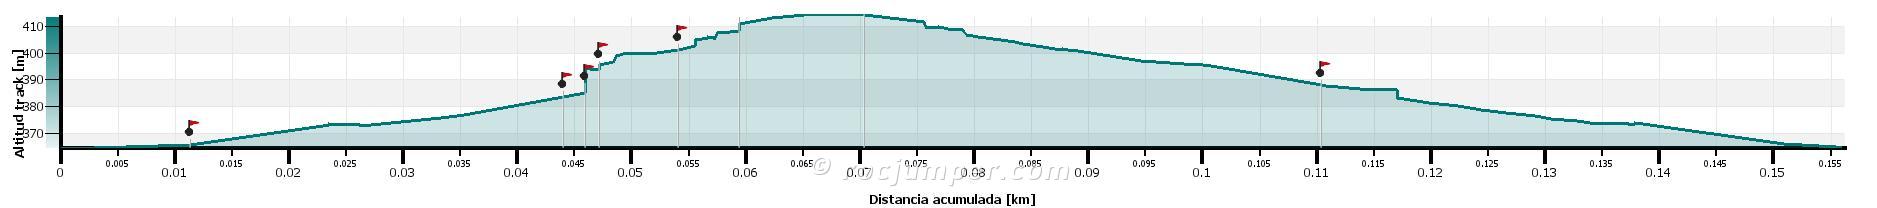 Altimetría - Carena d'Amets o Cresta d'Amets (V- 60 m) Sector Tanca-li-porta (Ivars de Noguera, Lleida)